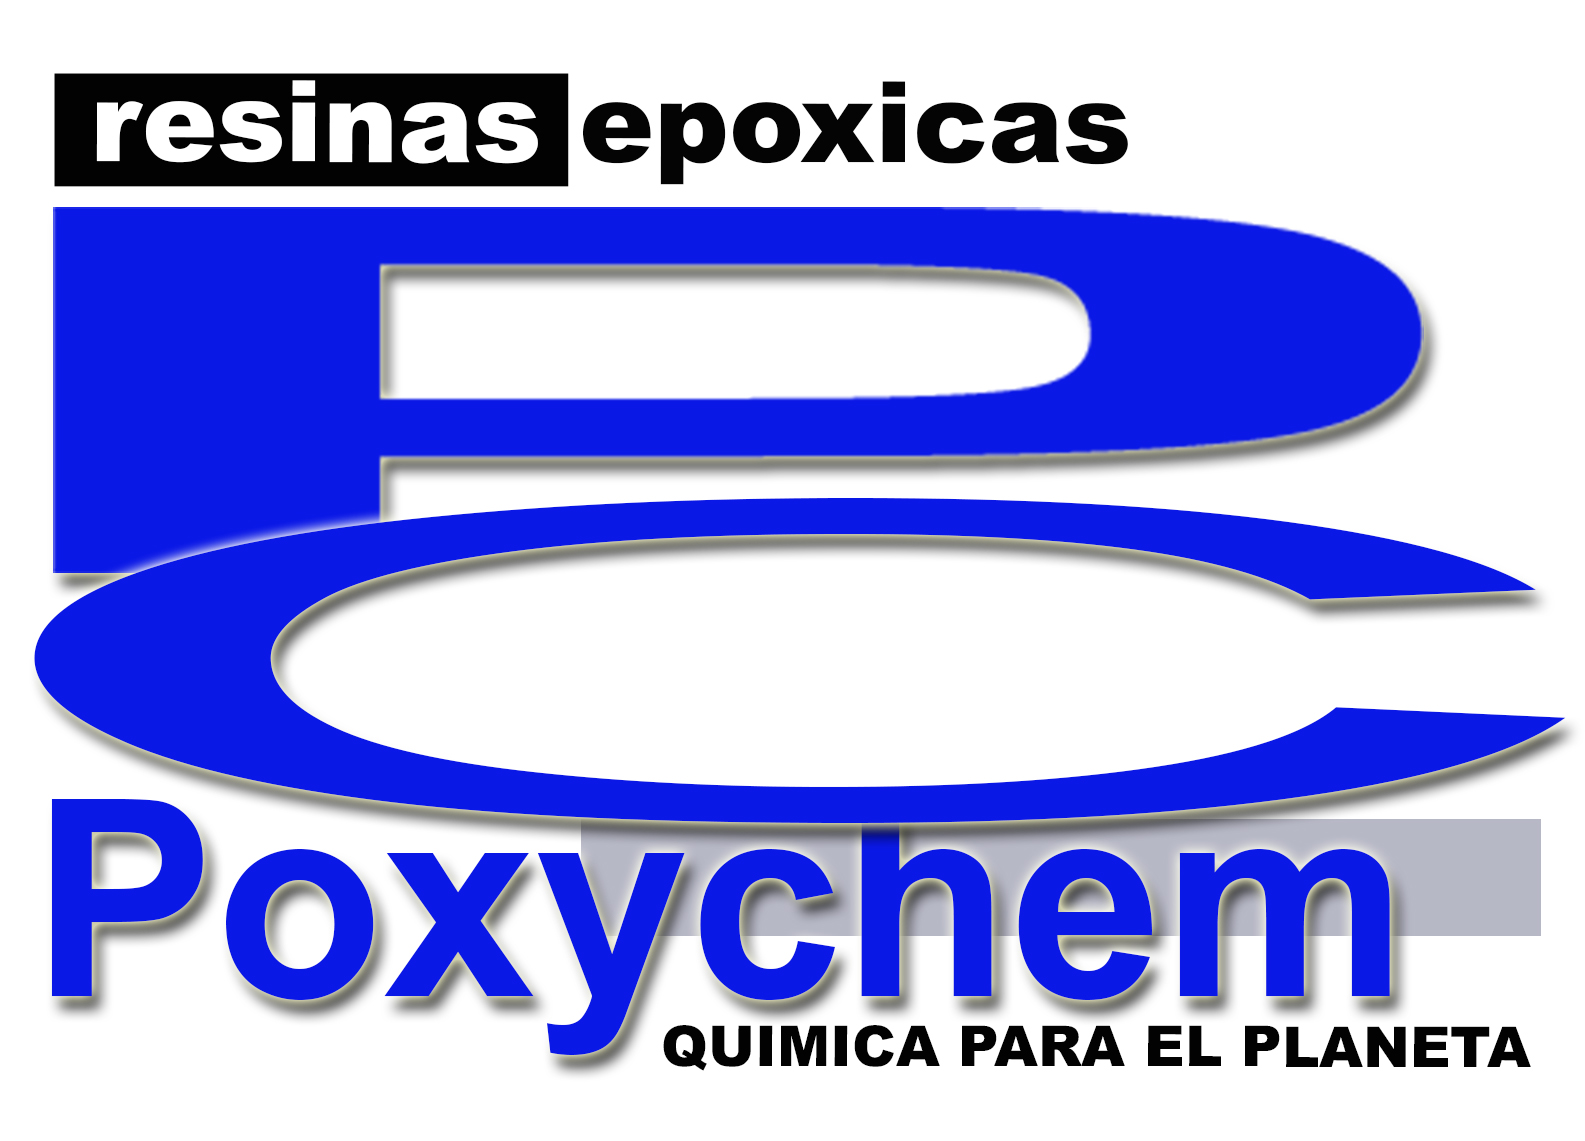 Poxychem